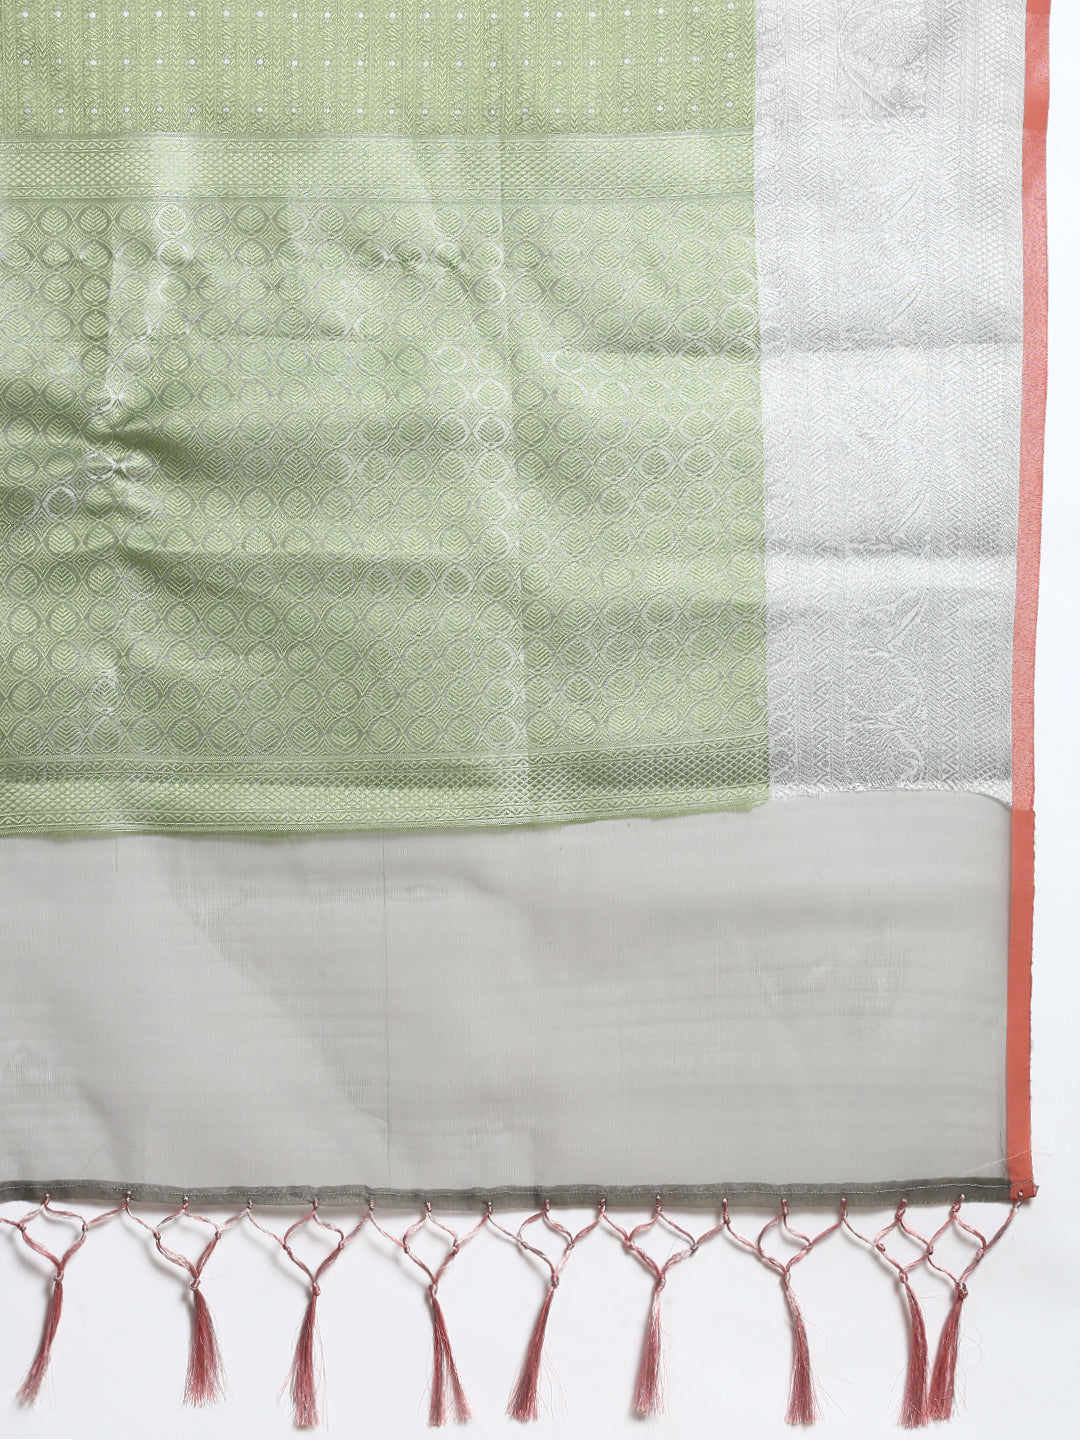 Semi Kora Cotton Allover Design Saree Green with Silver Zari Border SKC03-Zari view